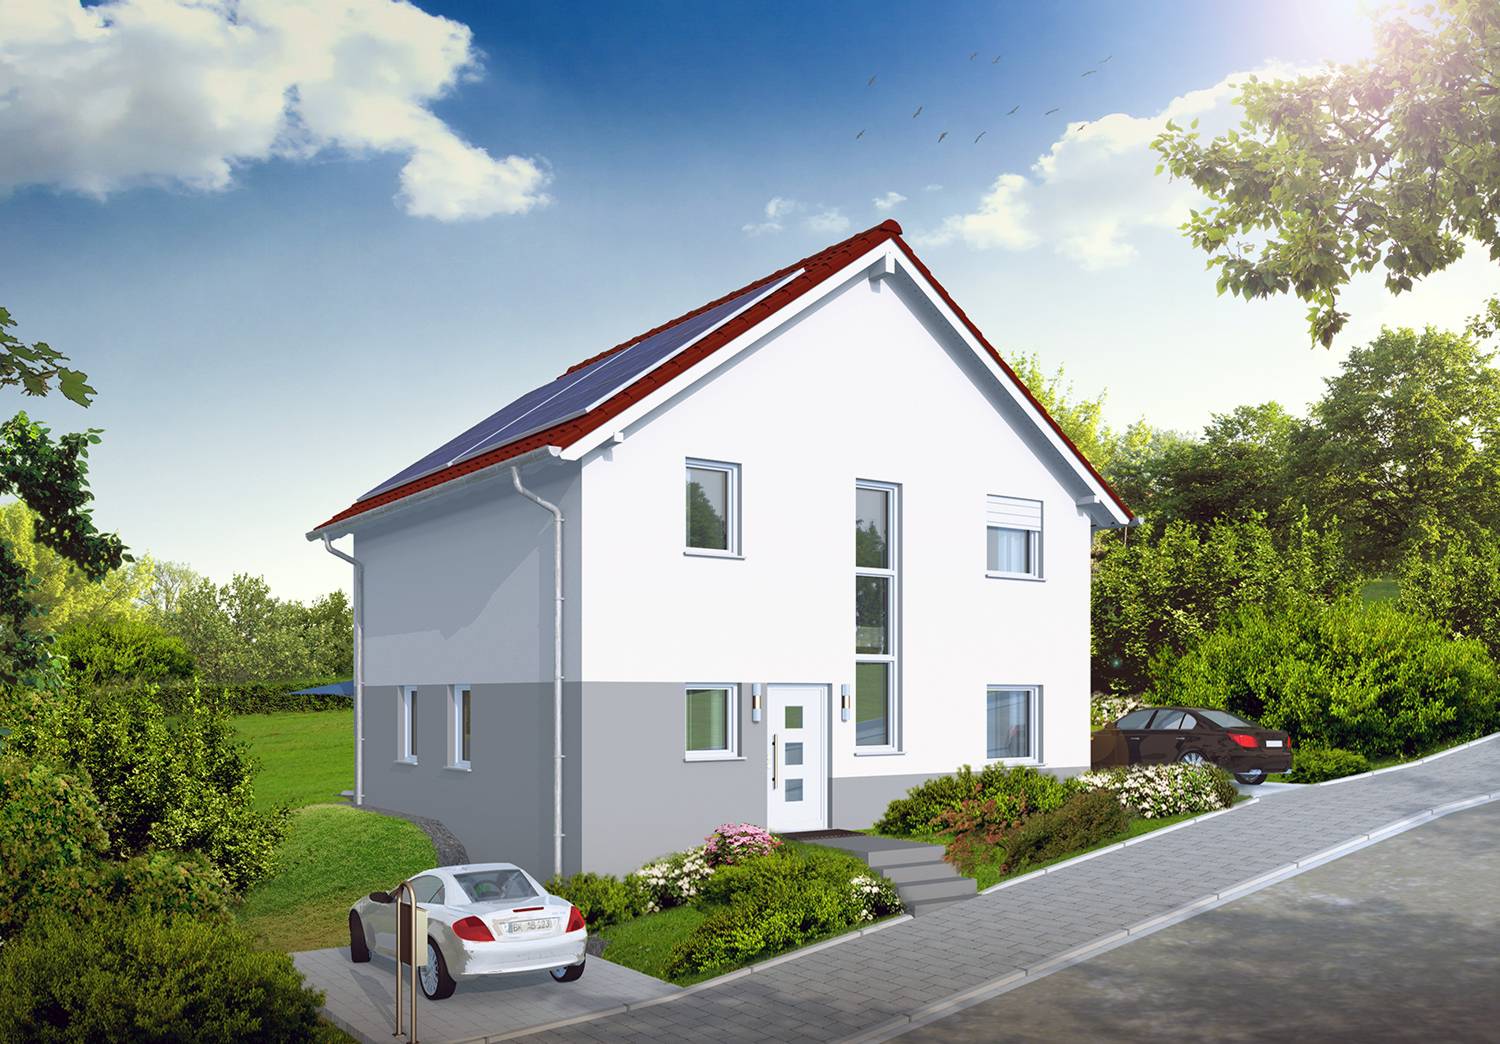 Architektur- Visualisierung für Neubau eines Einfamilienhaus in Hanglage, Ansicht Eingang von der Strassenseite, visualisiert für Brenner Immobilien aus Schifferstadt (Jahr 2021)